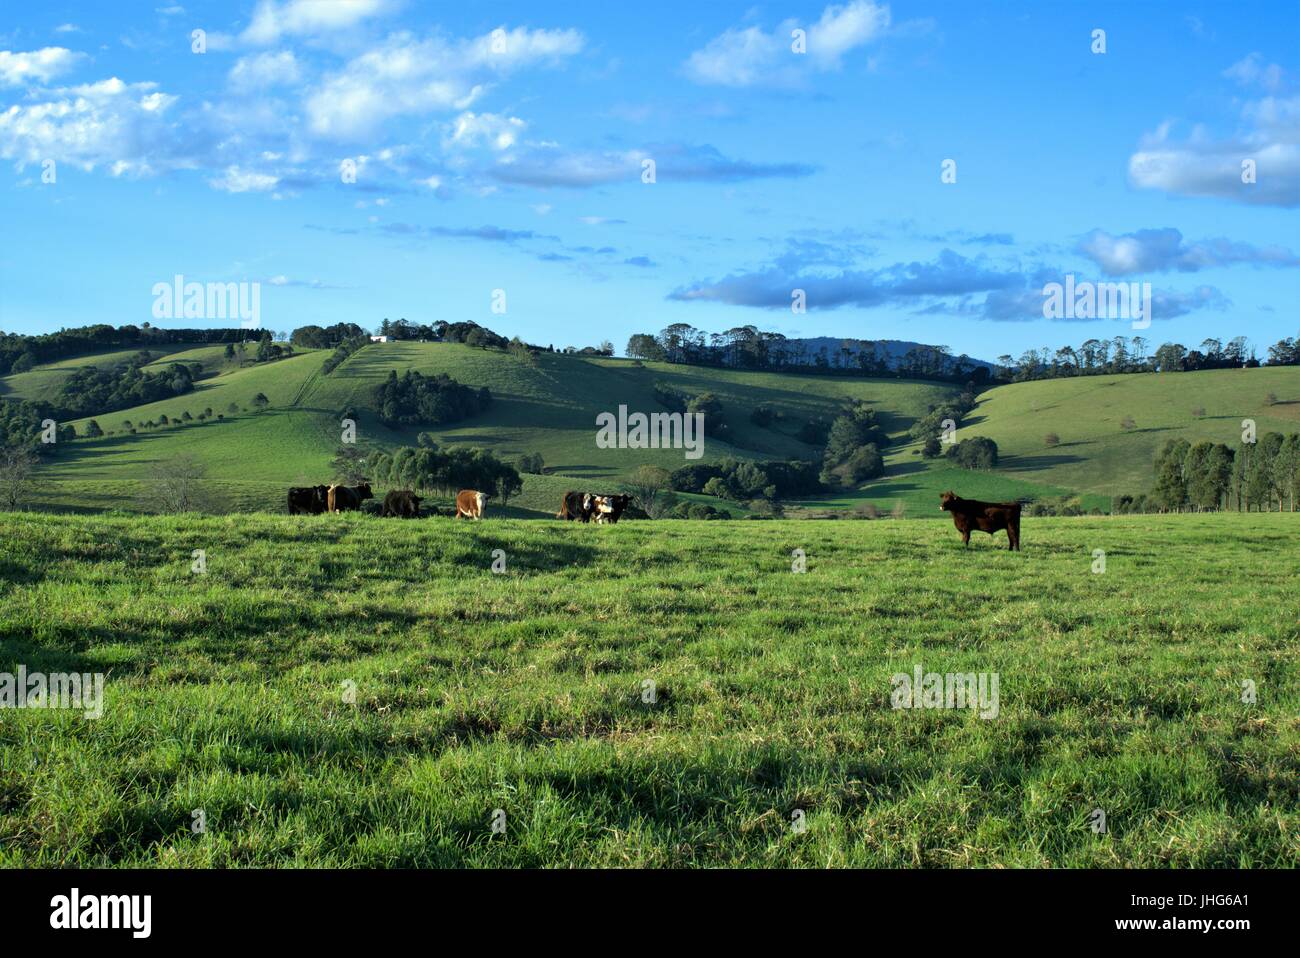 Landschaft von Vieh auf dem grünen Rasen in eine Wiese mit Blick auf Berge und blauer Himmel mit Wolken Stockfoto